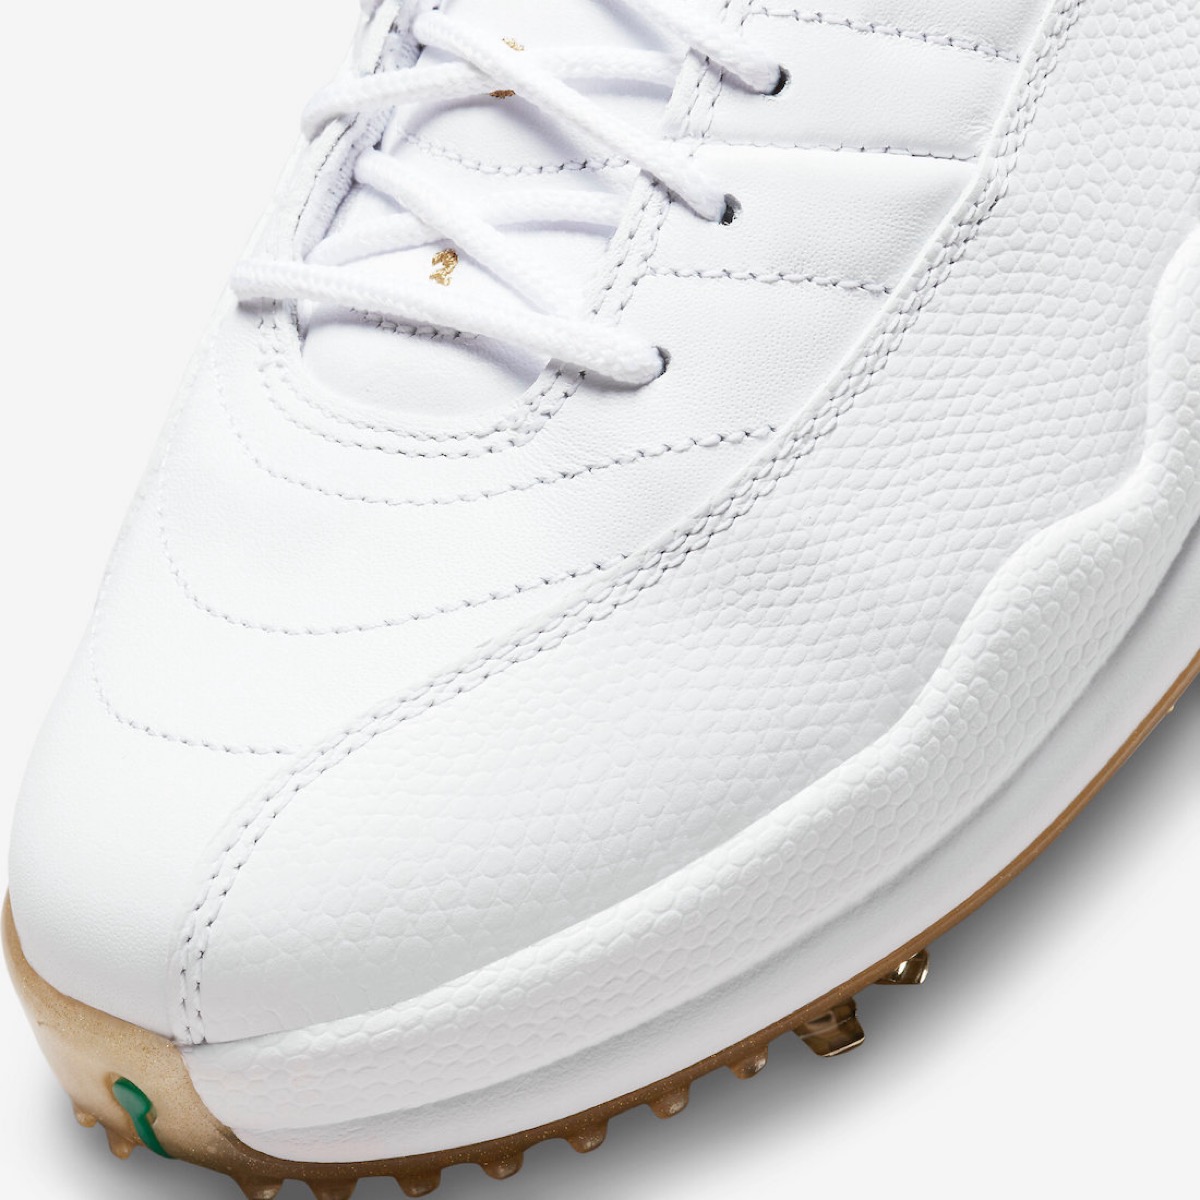 Nike Air Jordan 12 Low Golf “Metallic Gold”が国内5月21日に発売予定 